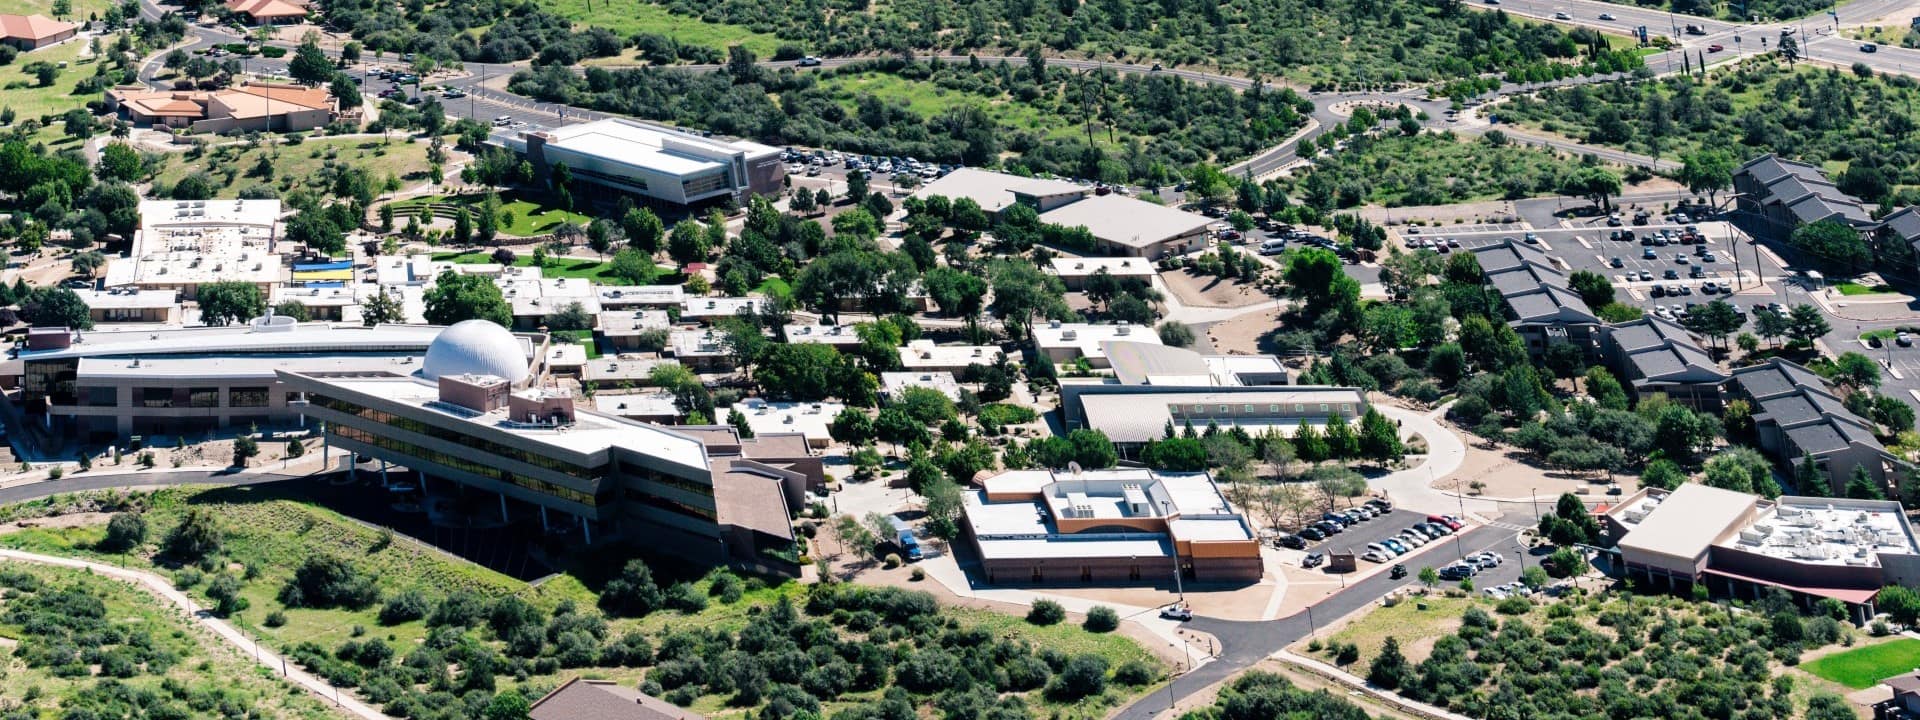 Aerial view of Prescott Campus